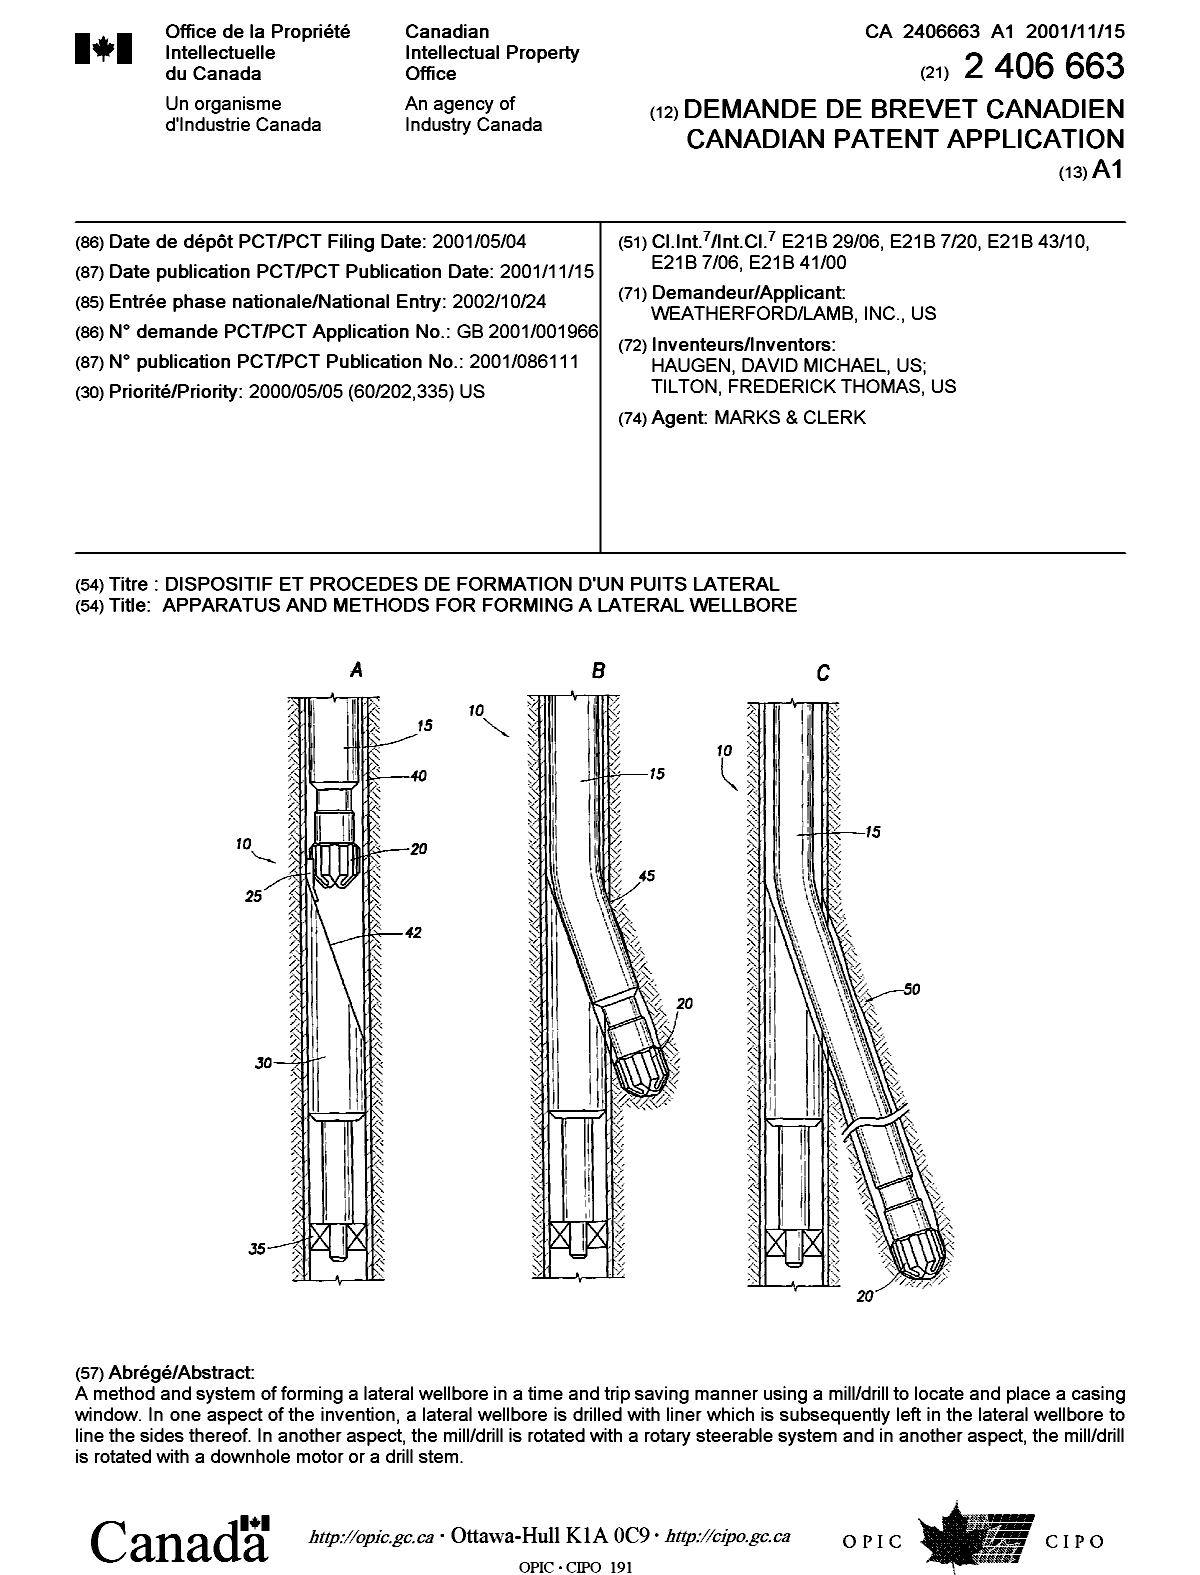 Document de brevet canadien 2406663. Page couverture 20030220. Image 1 de 1